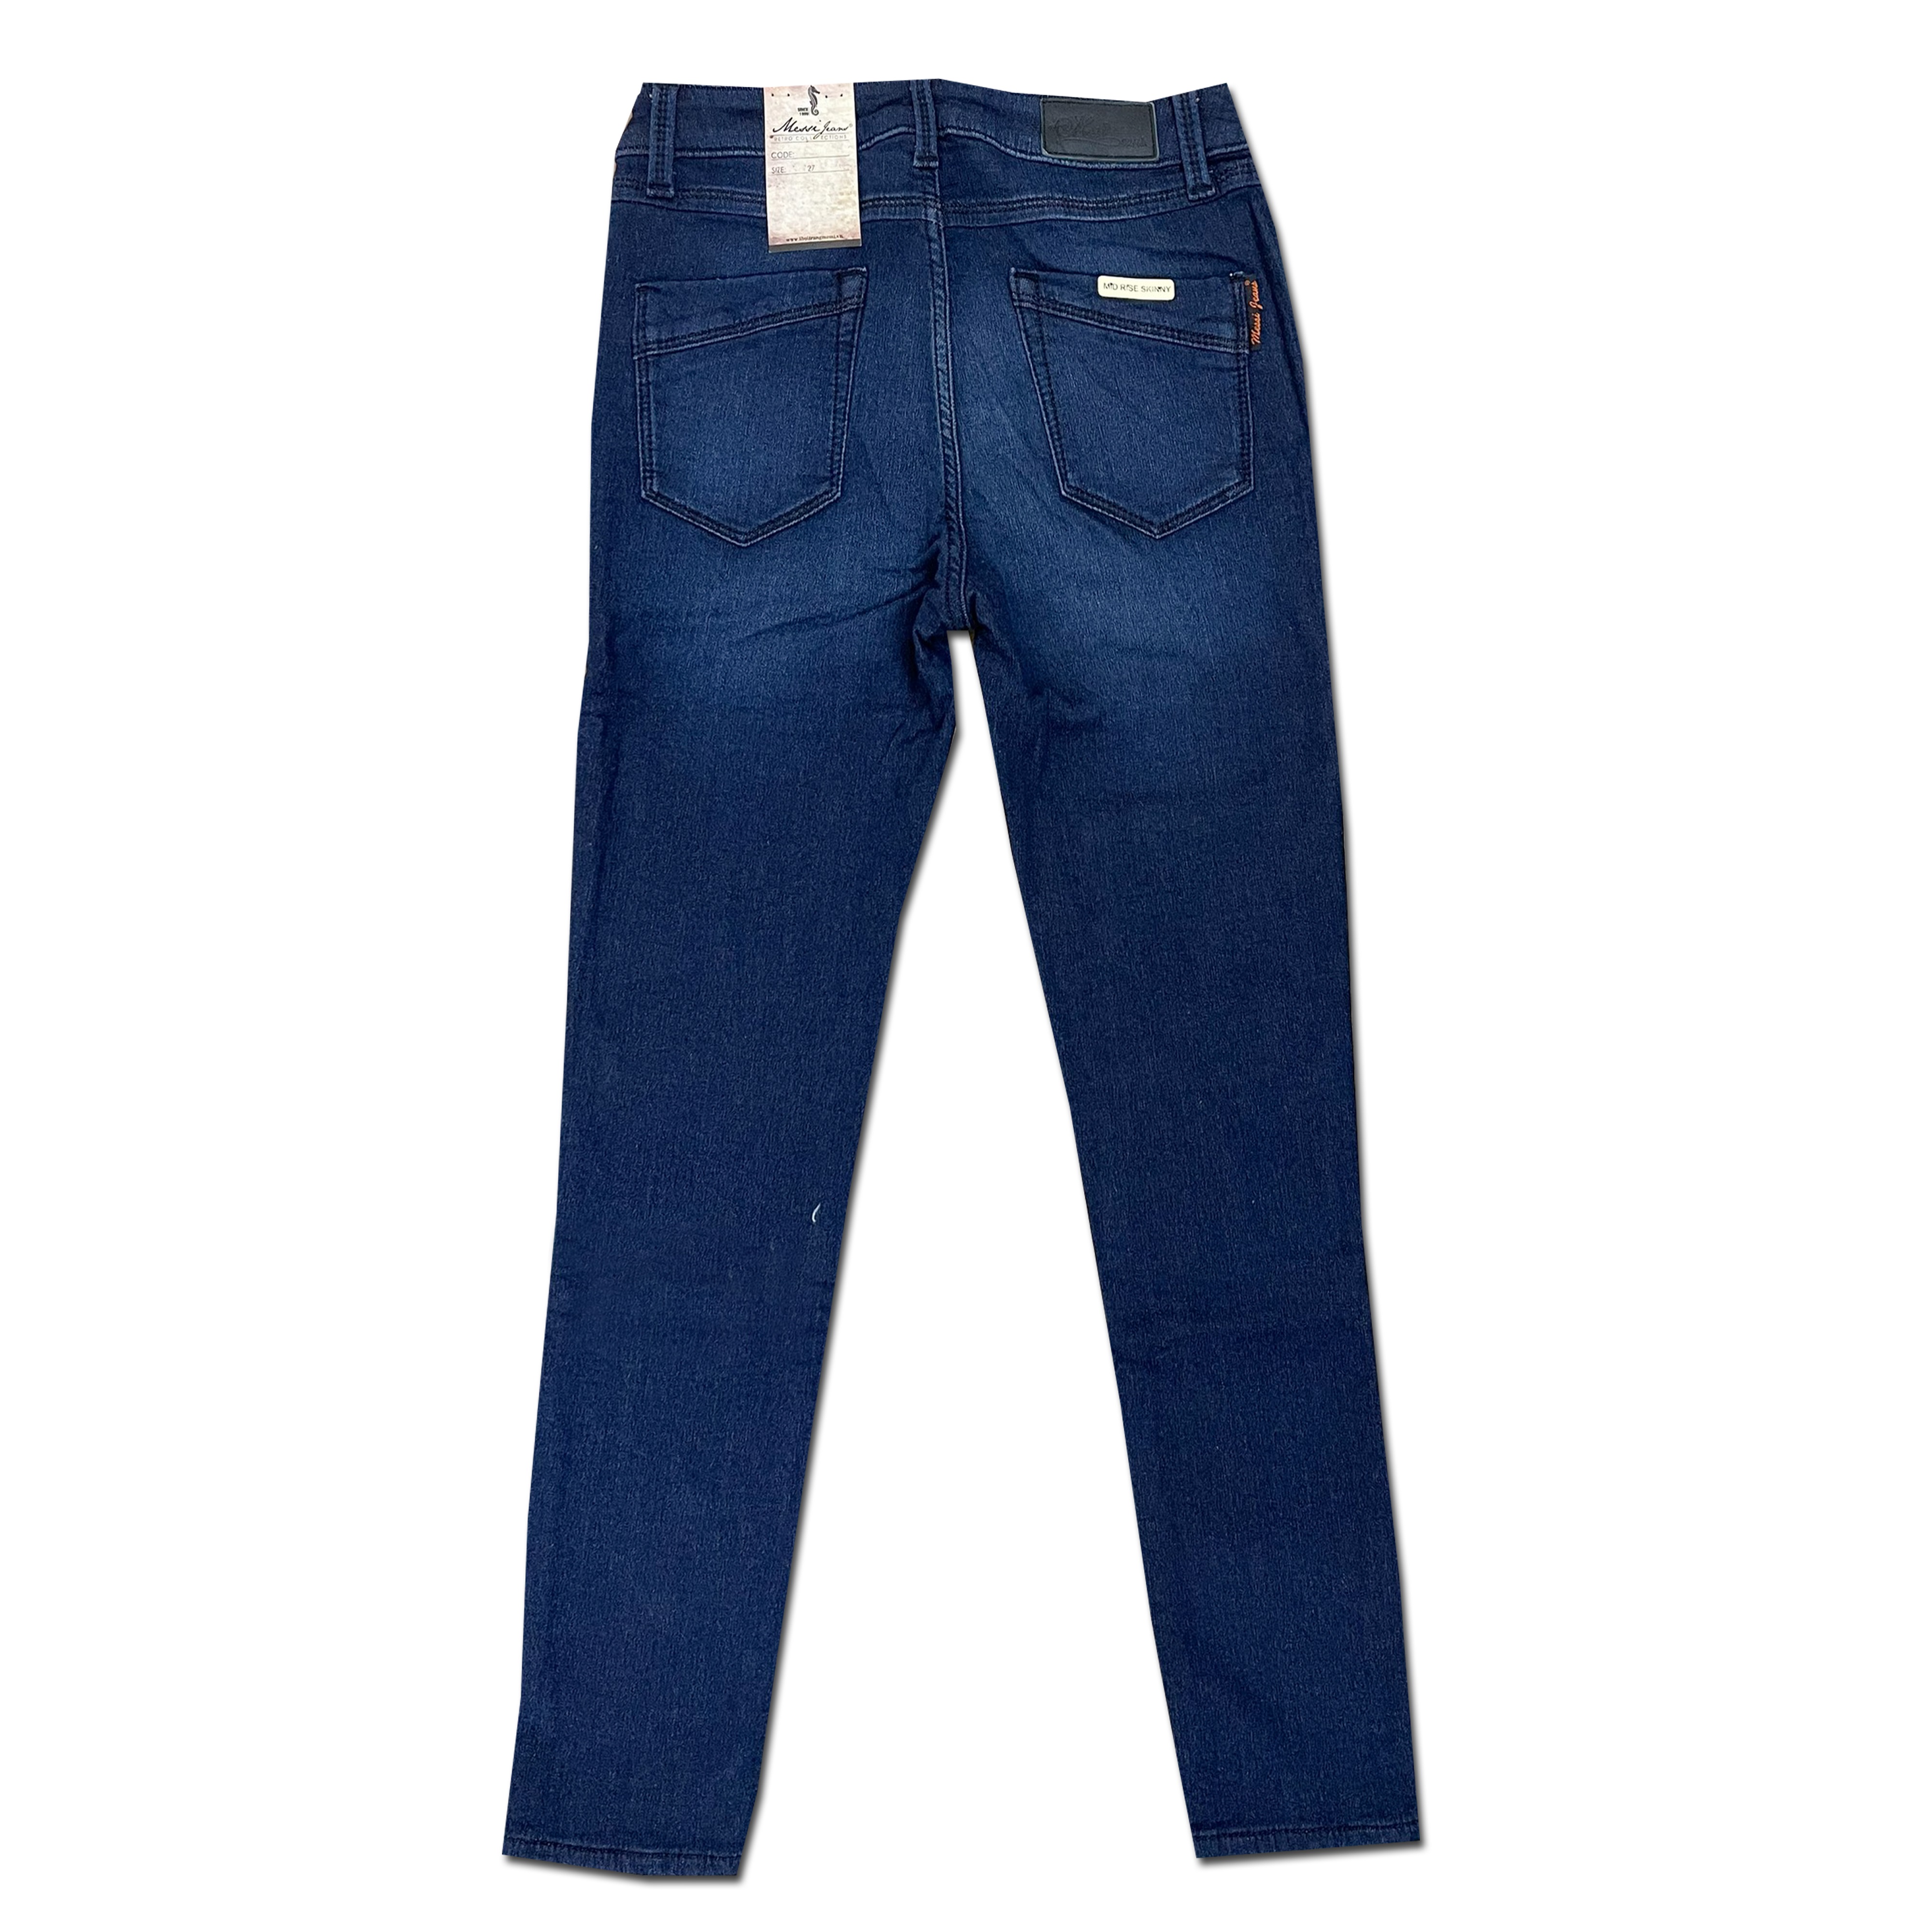 Quần jeans nữu ống ôm MESSI SJW-601-17